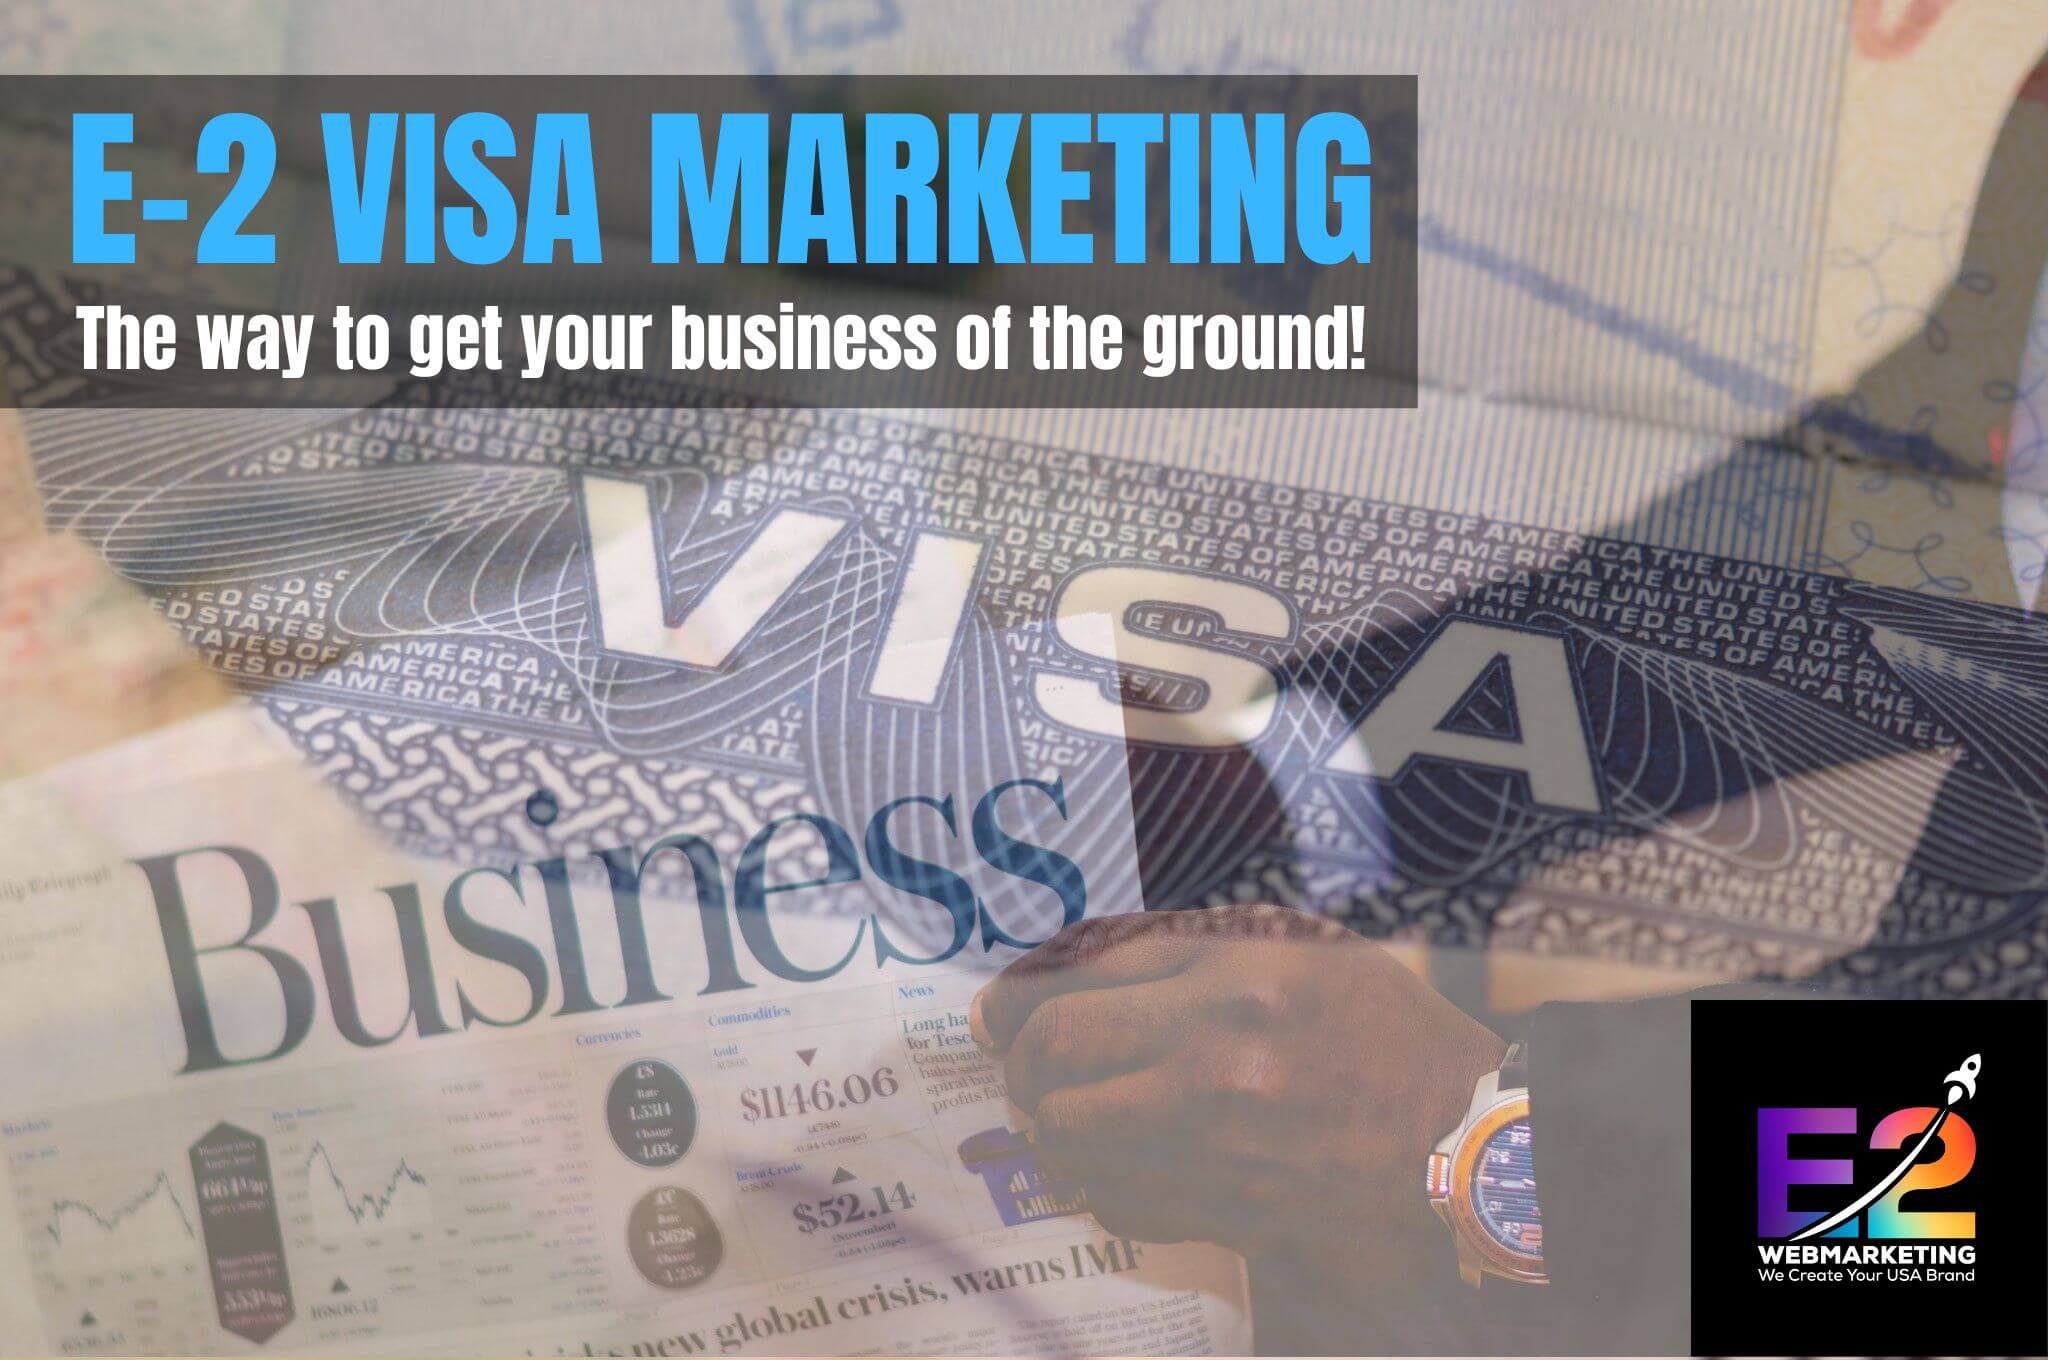 E2 Visa Marketing - die richtige Lösung für Marketingstrategien für Ihr E-2 Visa Unternehmen in den USA. Seien Sie erfolgreich. Kommen Sie zu e2webmarketing